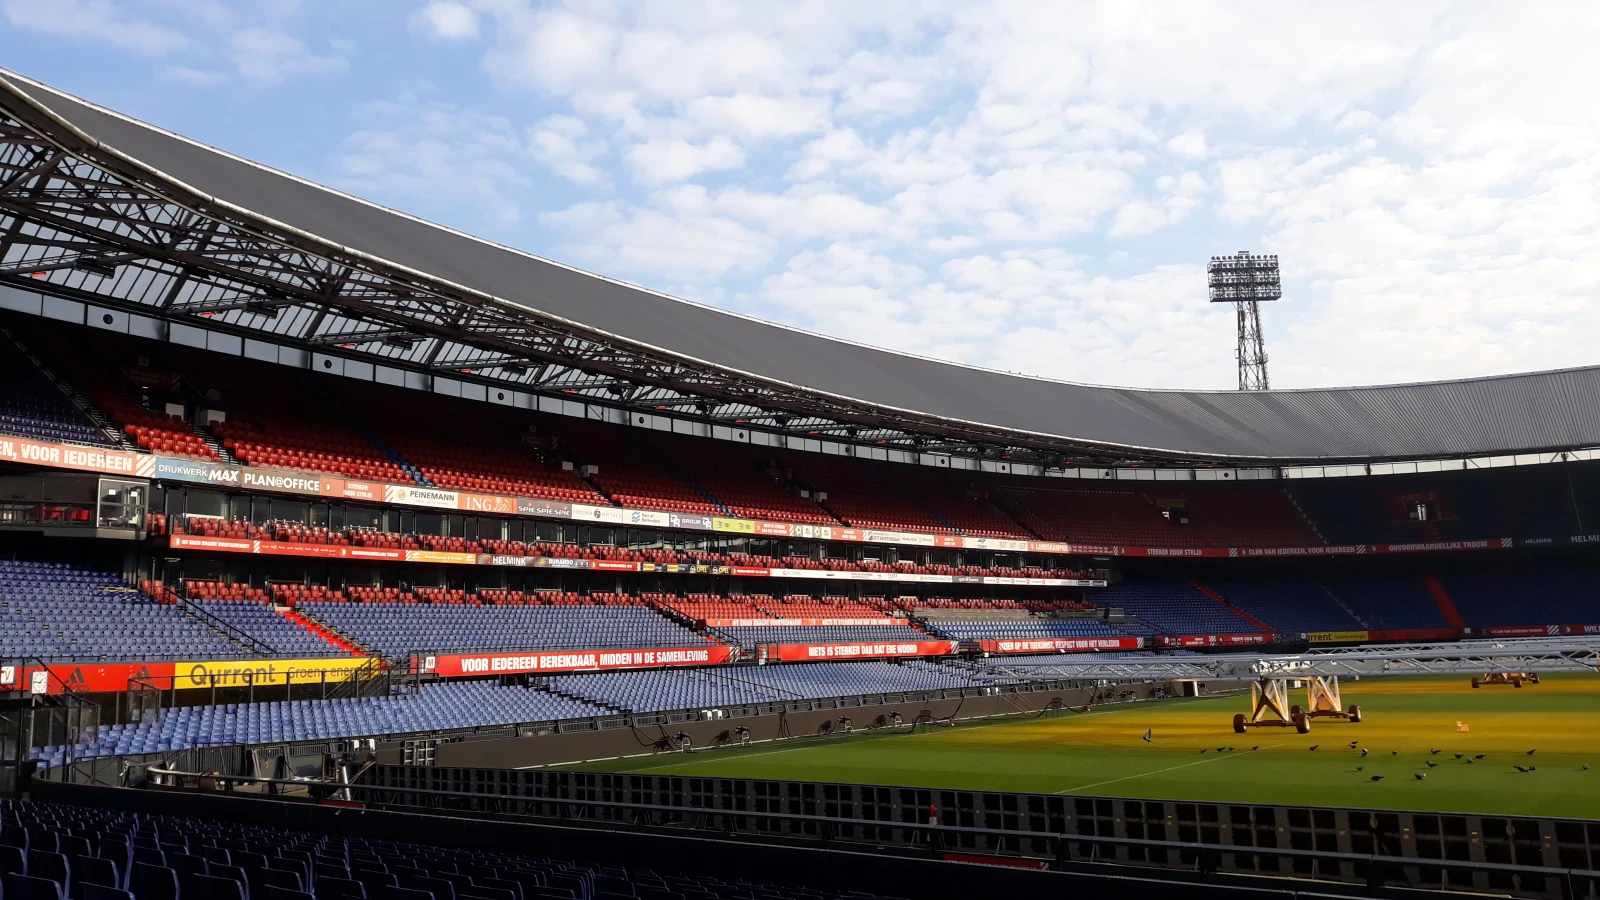 Wedstrijd van Feyenoord best bekeken live wedstrijd op FOX Sports van dit seizoen